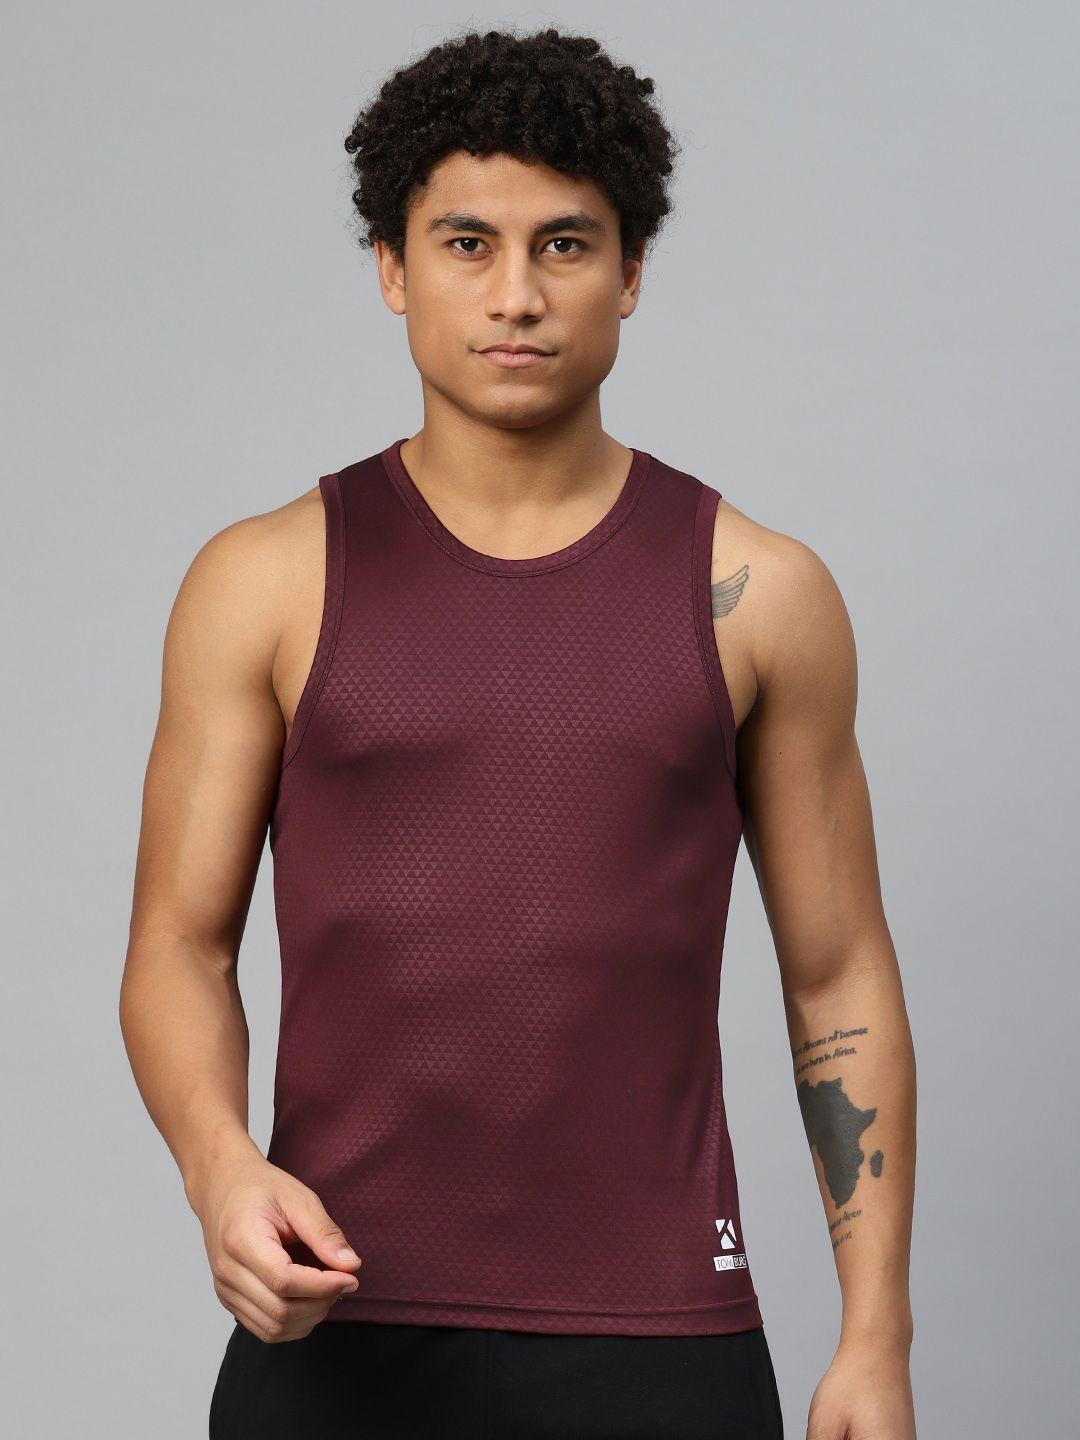 tom-burg-men-printed-gym-vest